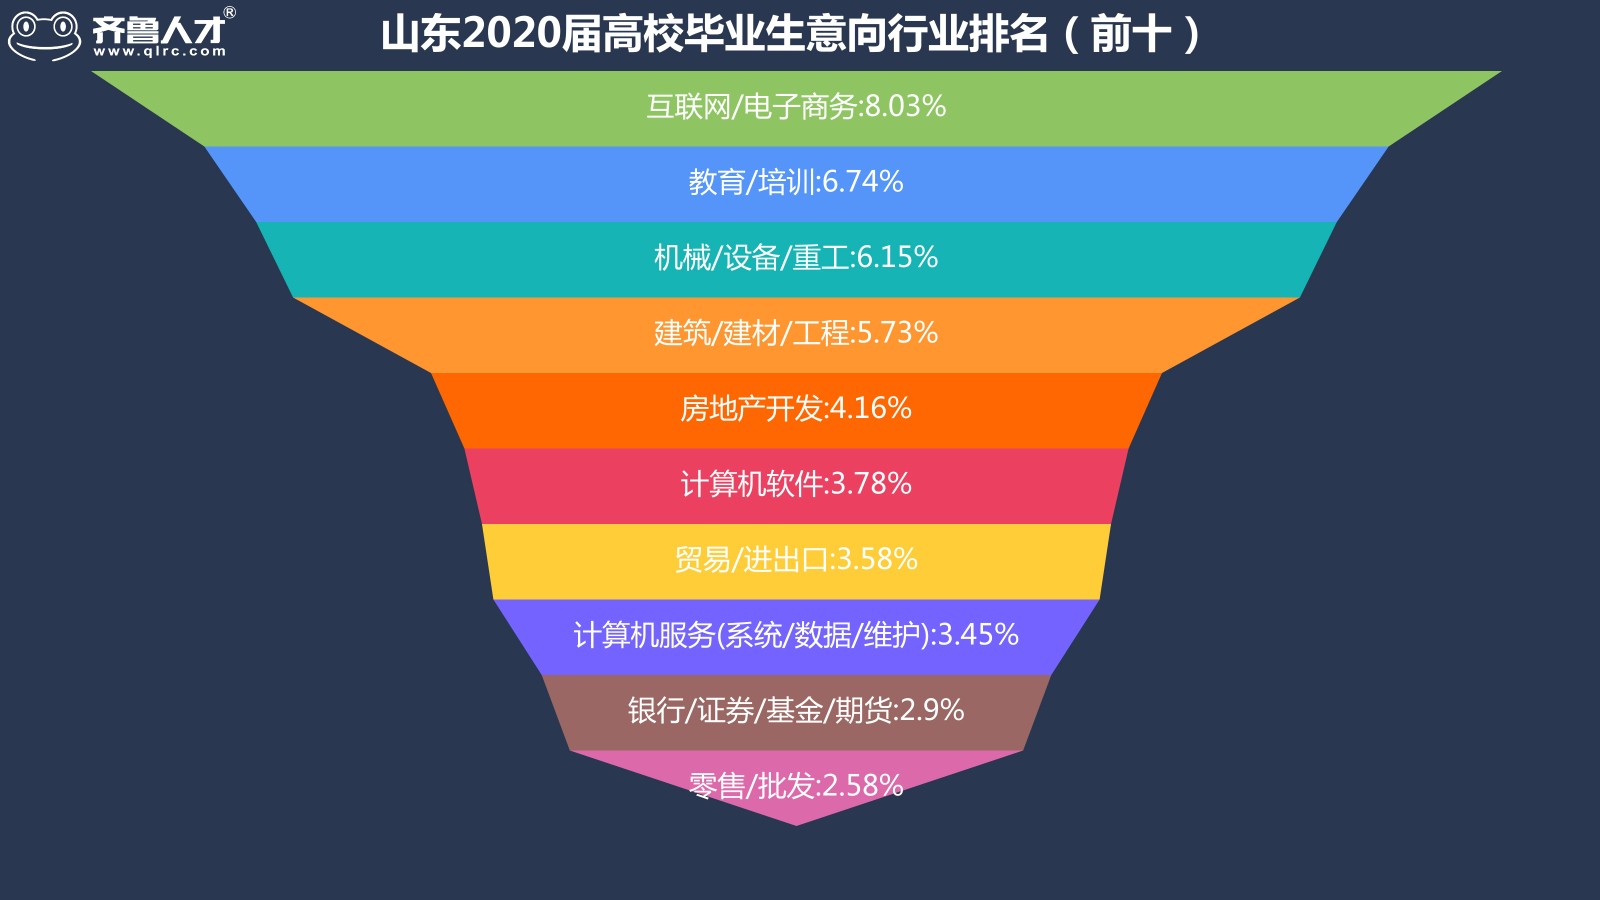 齐鲁人才网济南成为山东2020届高校毕业生就业地首选，平均薪酬达5986元图3.jpg